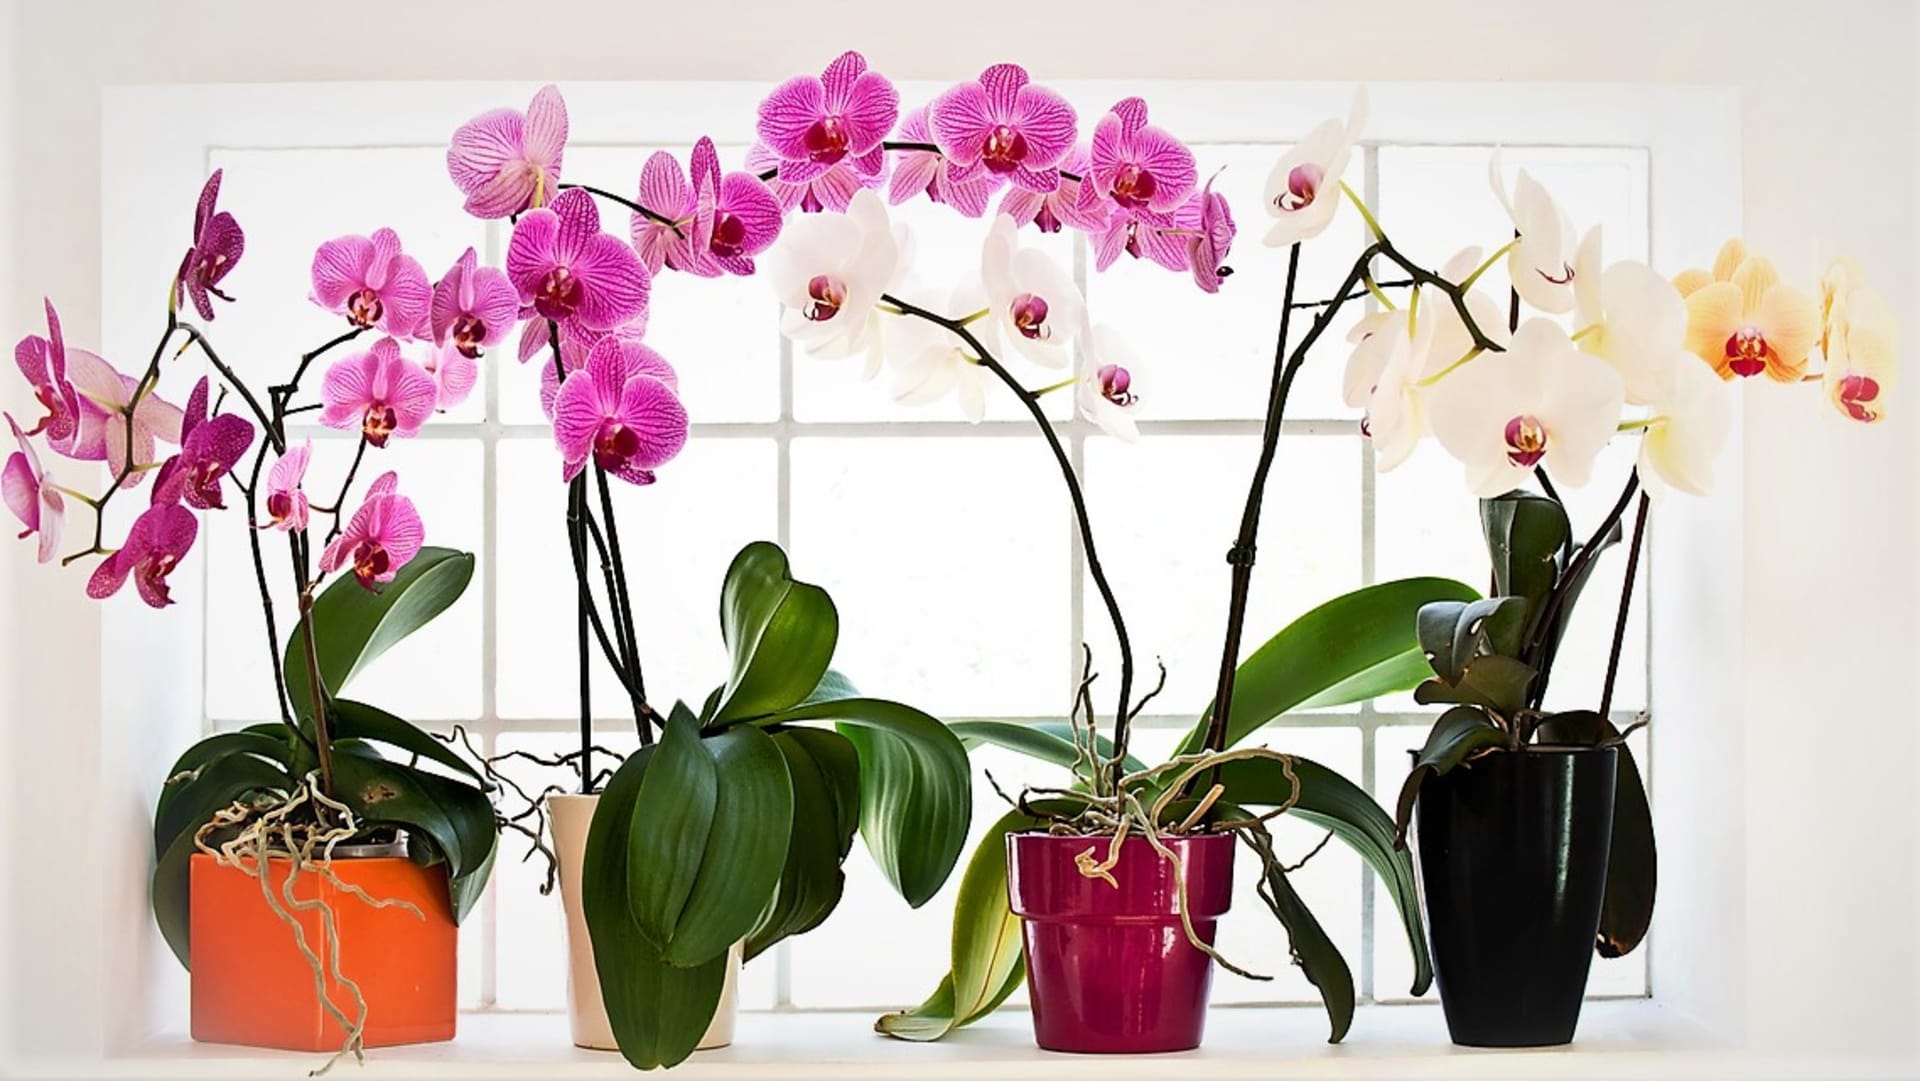 Atraktivní orchidej Phalaenopsis (česky můrovec) se bezvadně uplatní v moderním pojetí českých Vánoc. Patří k odolnějším druhům a je vhodná i pro pěstitele začátečníky.